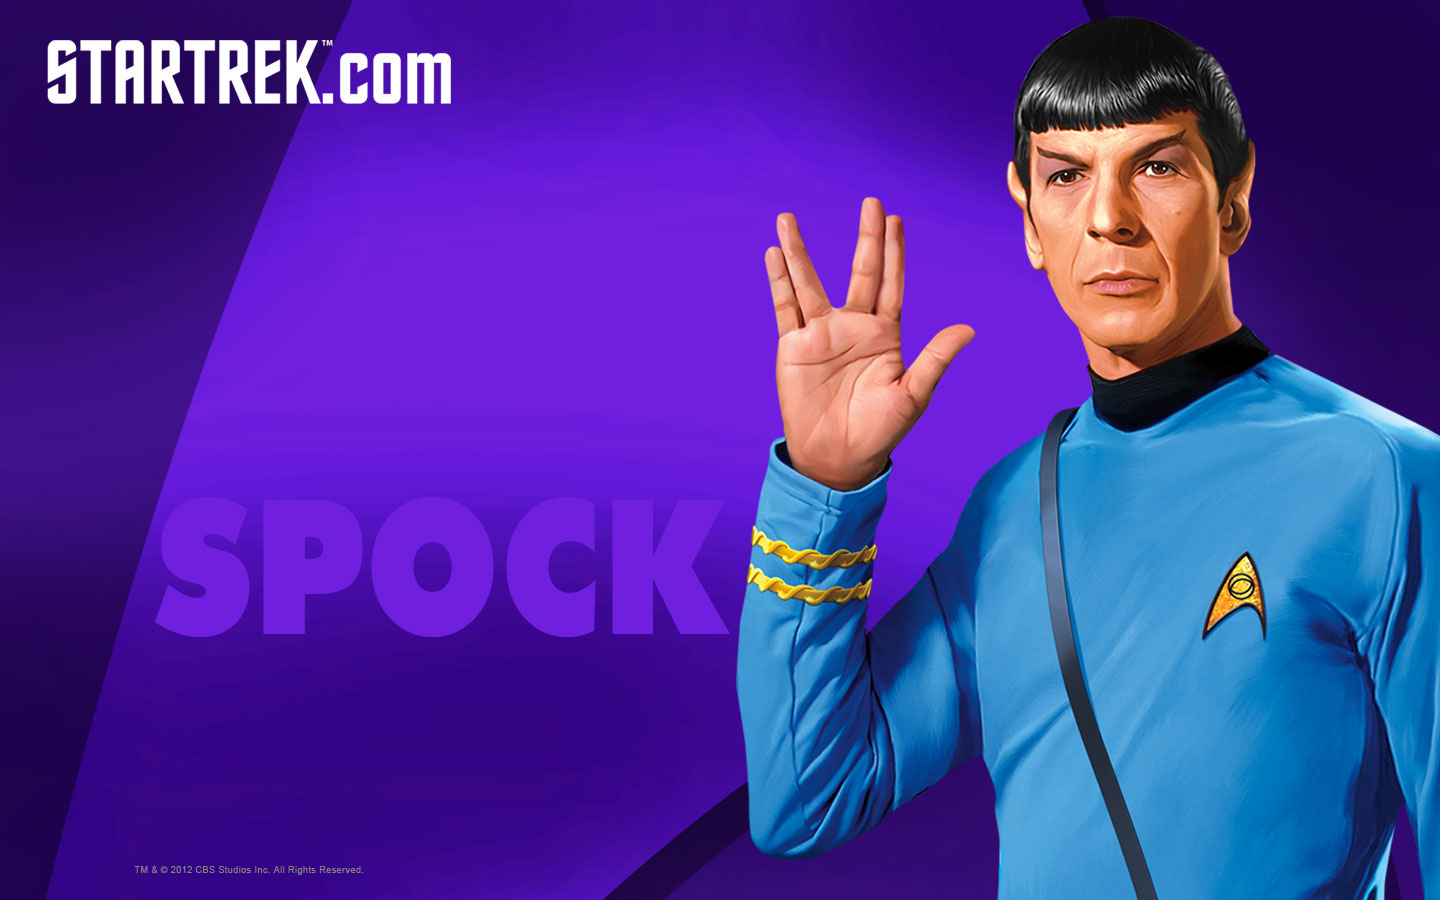 spock-live-long-and-prosper.jpg